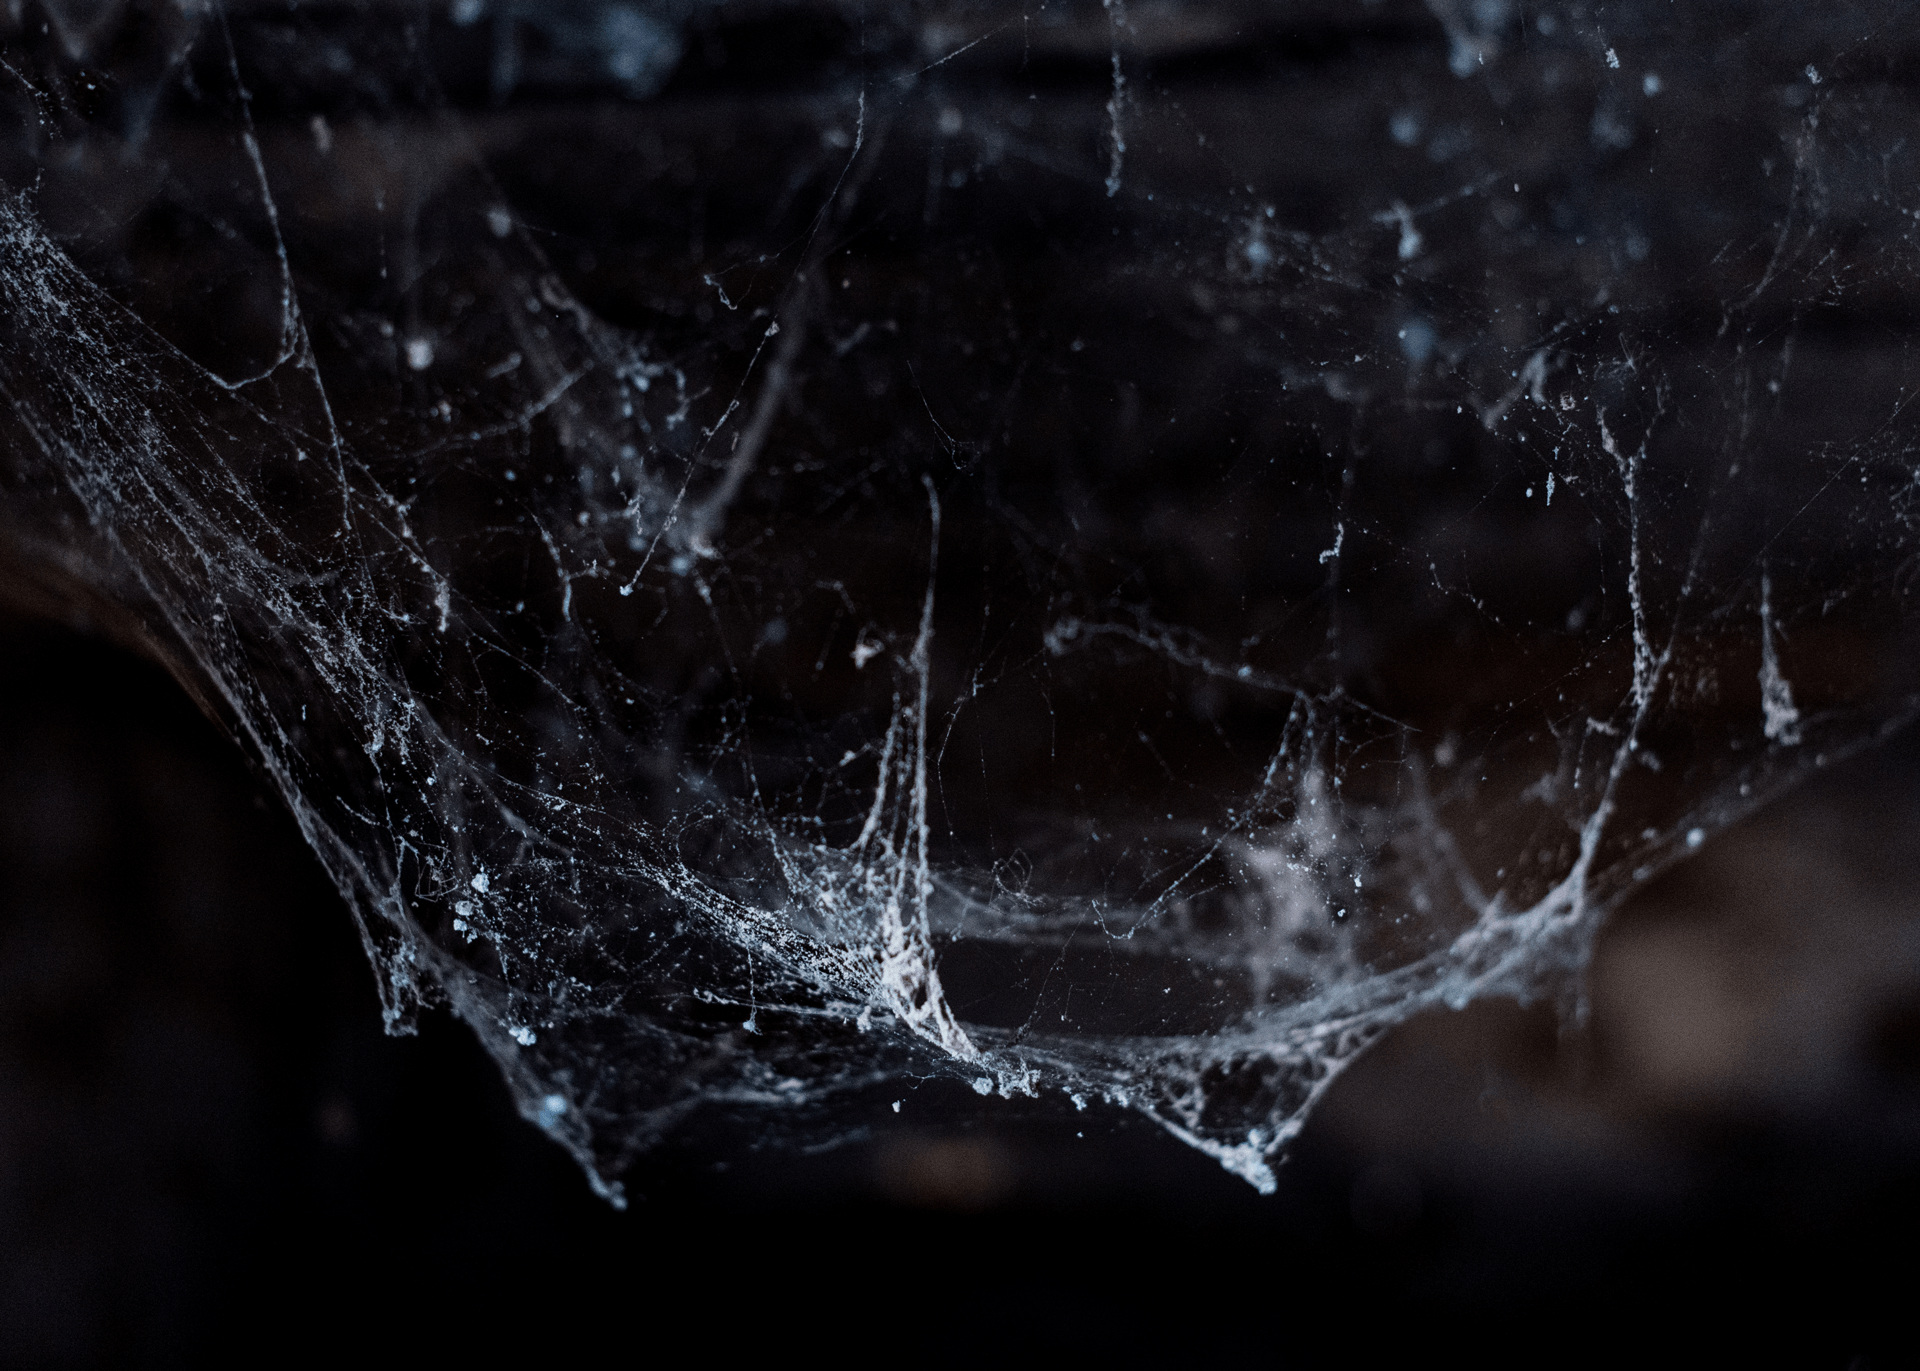 Spider-Webs